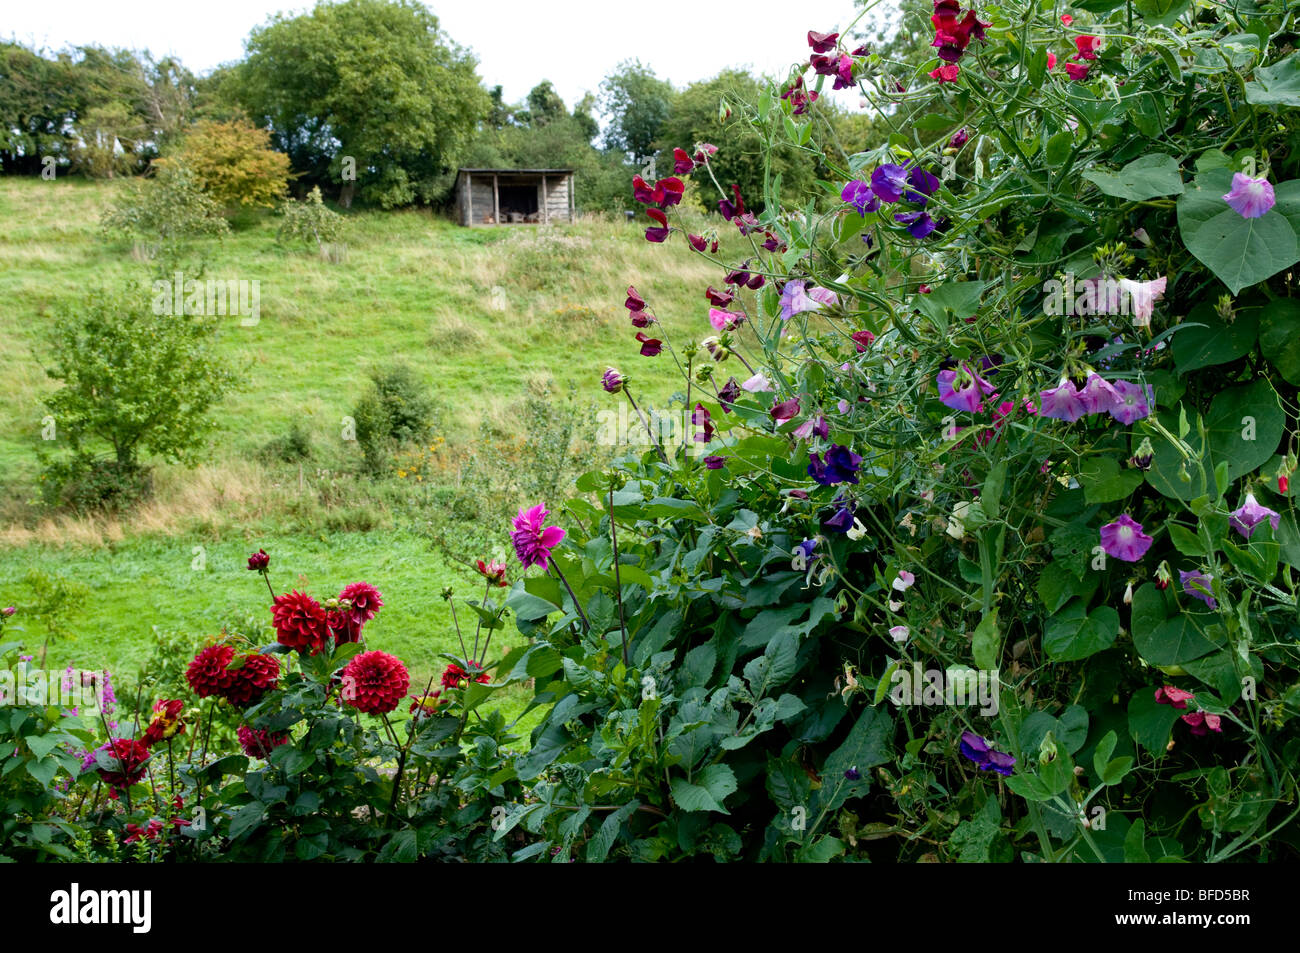 Jüngere Court Gardens, Cotswolds. Sommerblumen mit Feld und hölzerne Unterschlupf in der Ferne. Stockfoto